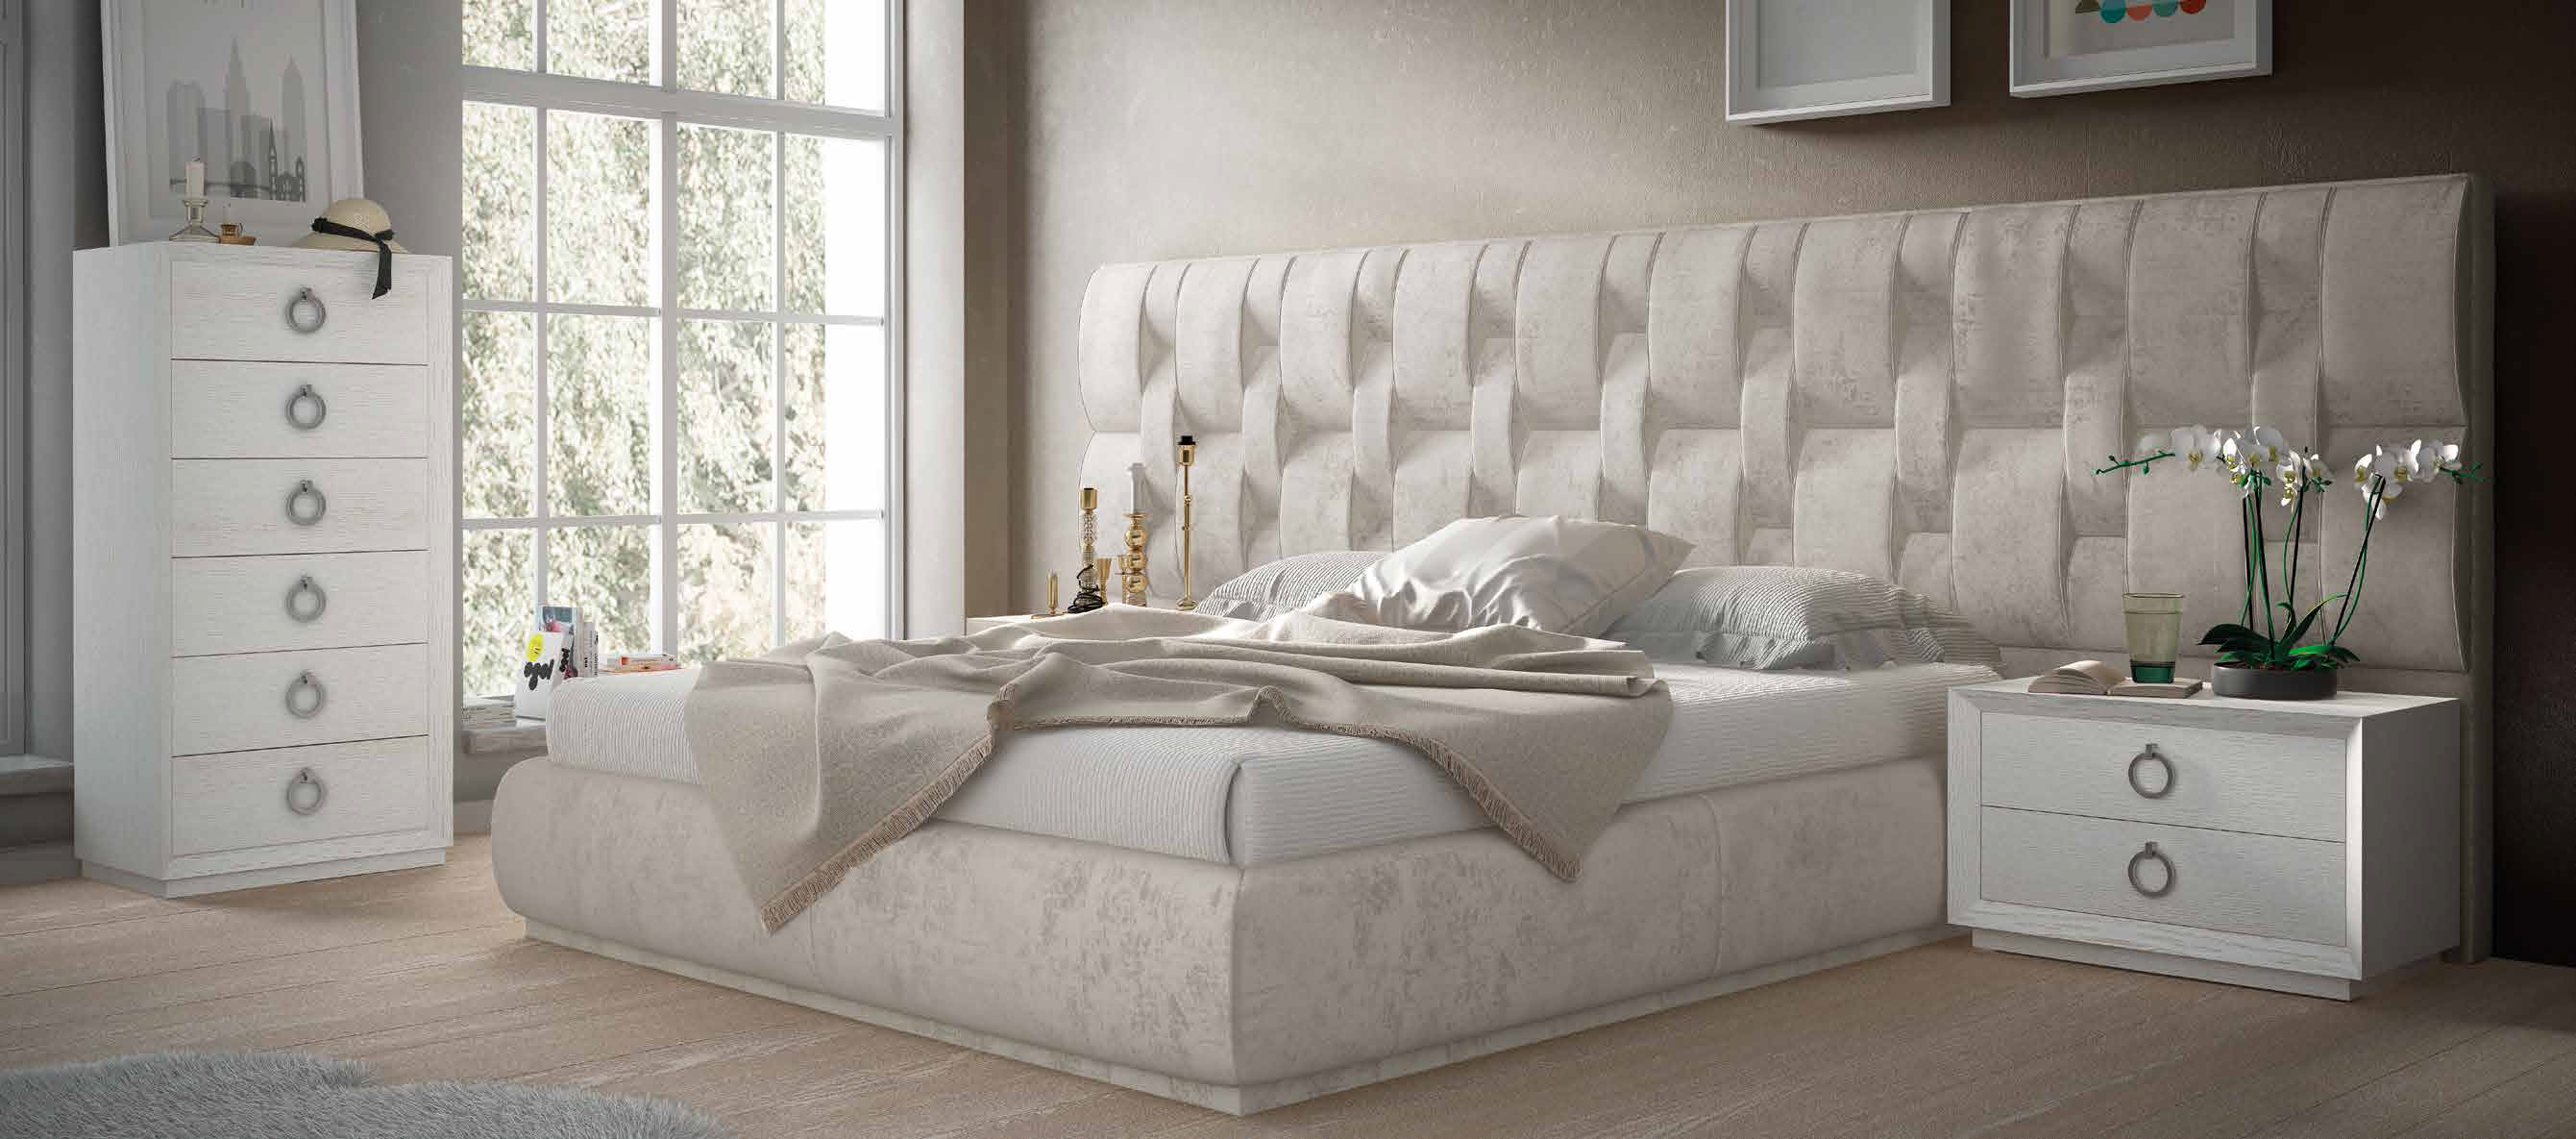 Brands Franco Furniture Avanty Bedrooms, Spain DOR 68